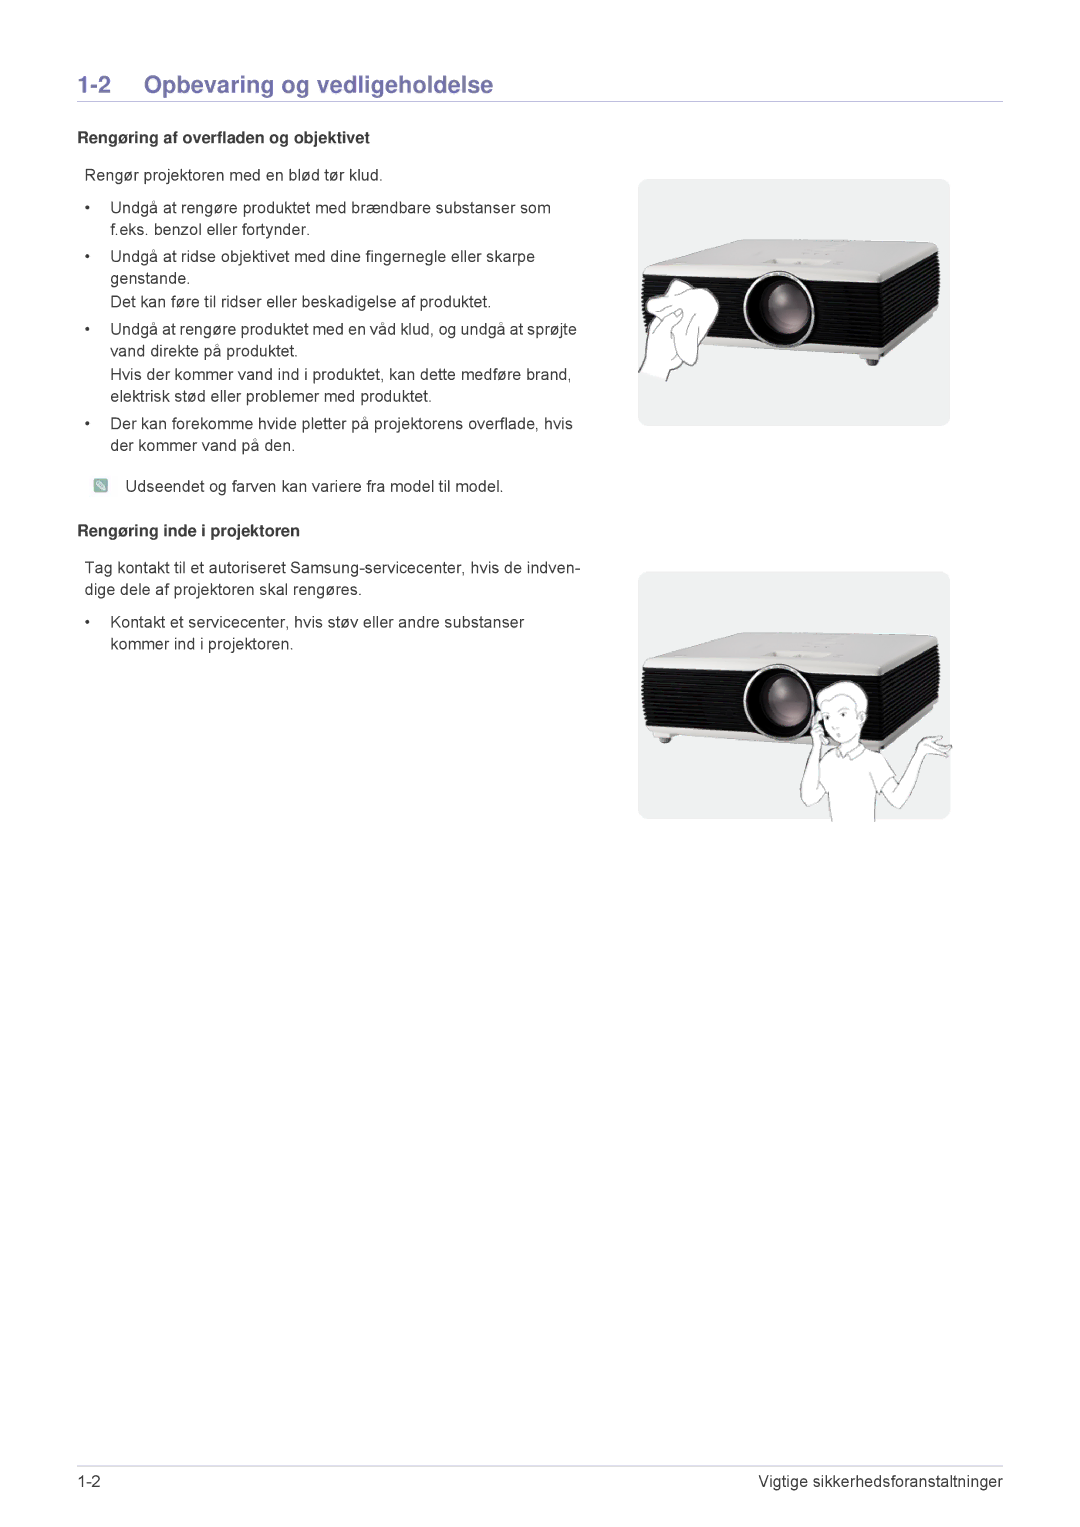 Samsung SP1055XWX/EN Opbevaring og vedligeholdelse, Rengøring af overfladen og objektivet, Rengøring inde i projektoren 